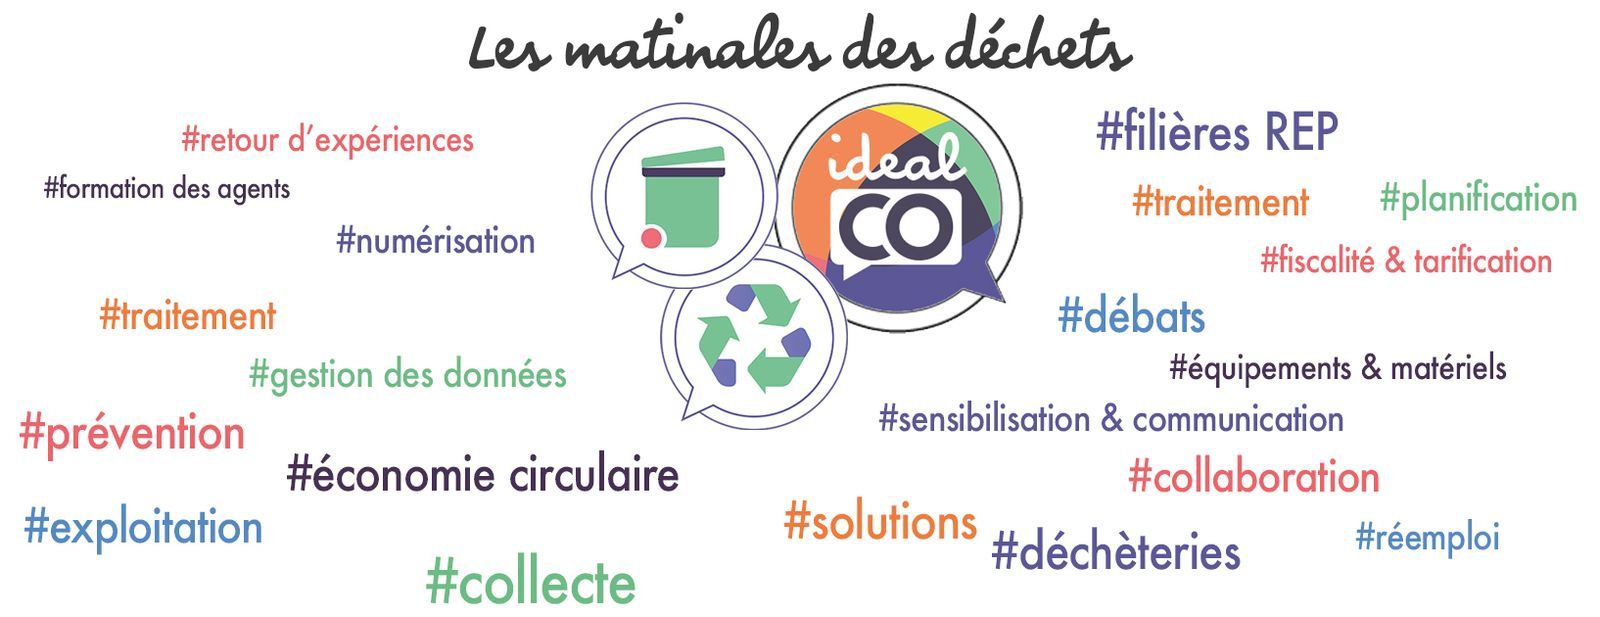 #LMDD - LES MATINALES DES DECHETS -  Les objets connectés dans le monde des déchets : où en sommes-nous ?